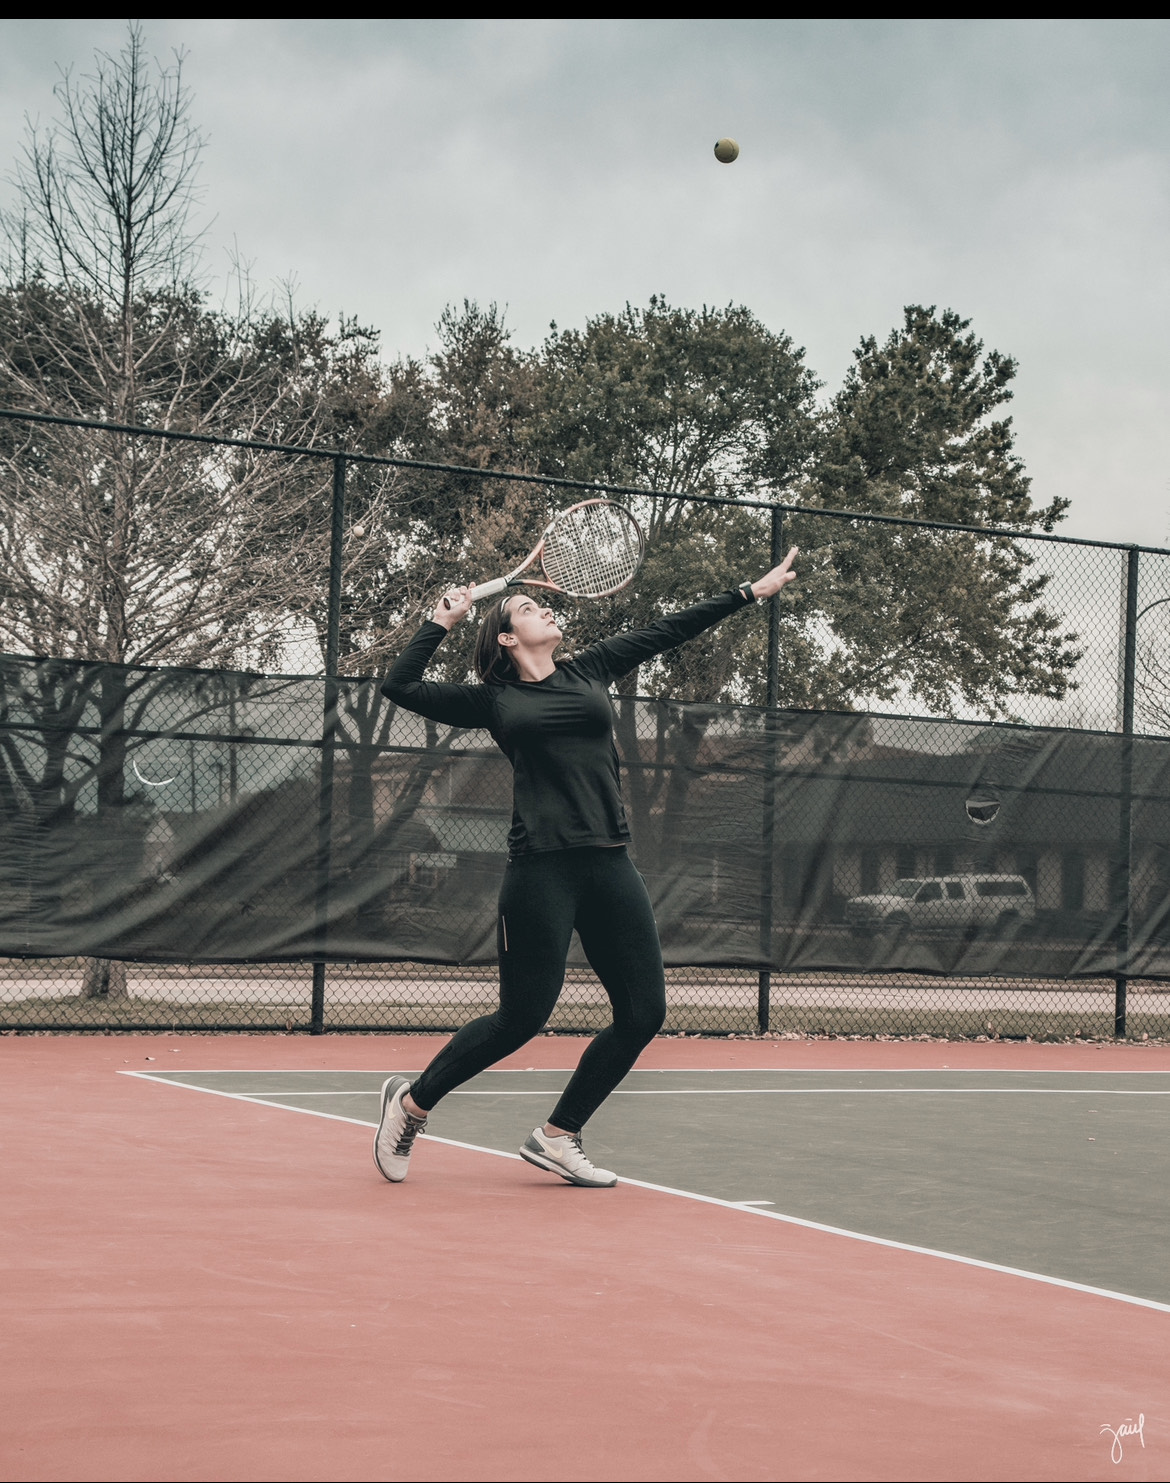 Maria G. teaches tennis lessons in Houston, TX